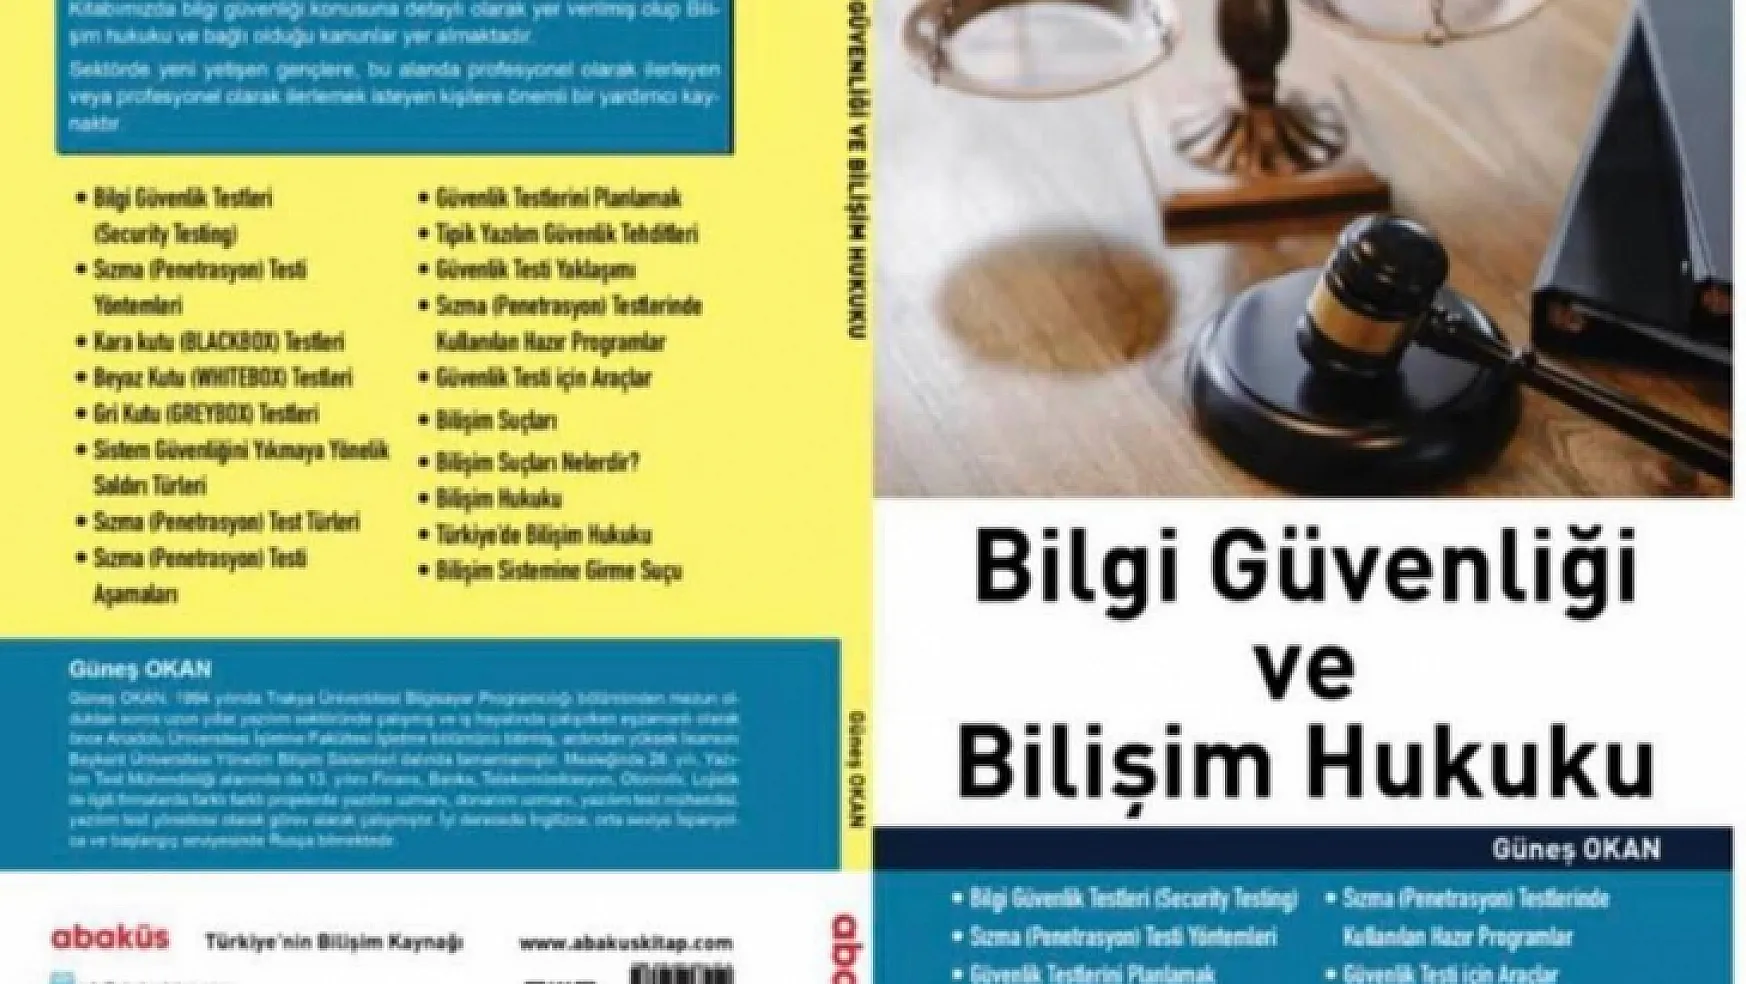 Abaküs Türkiye'nin bilişim kaynağı